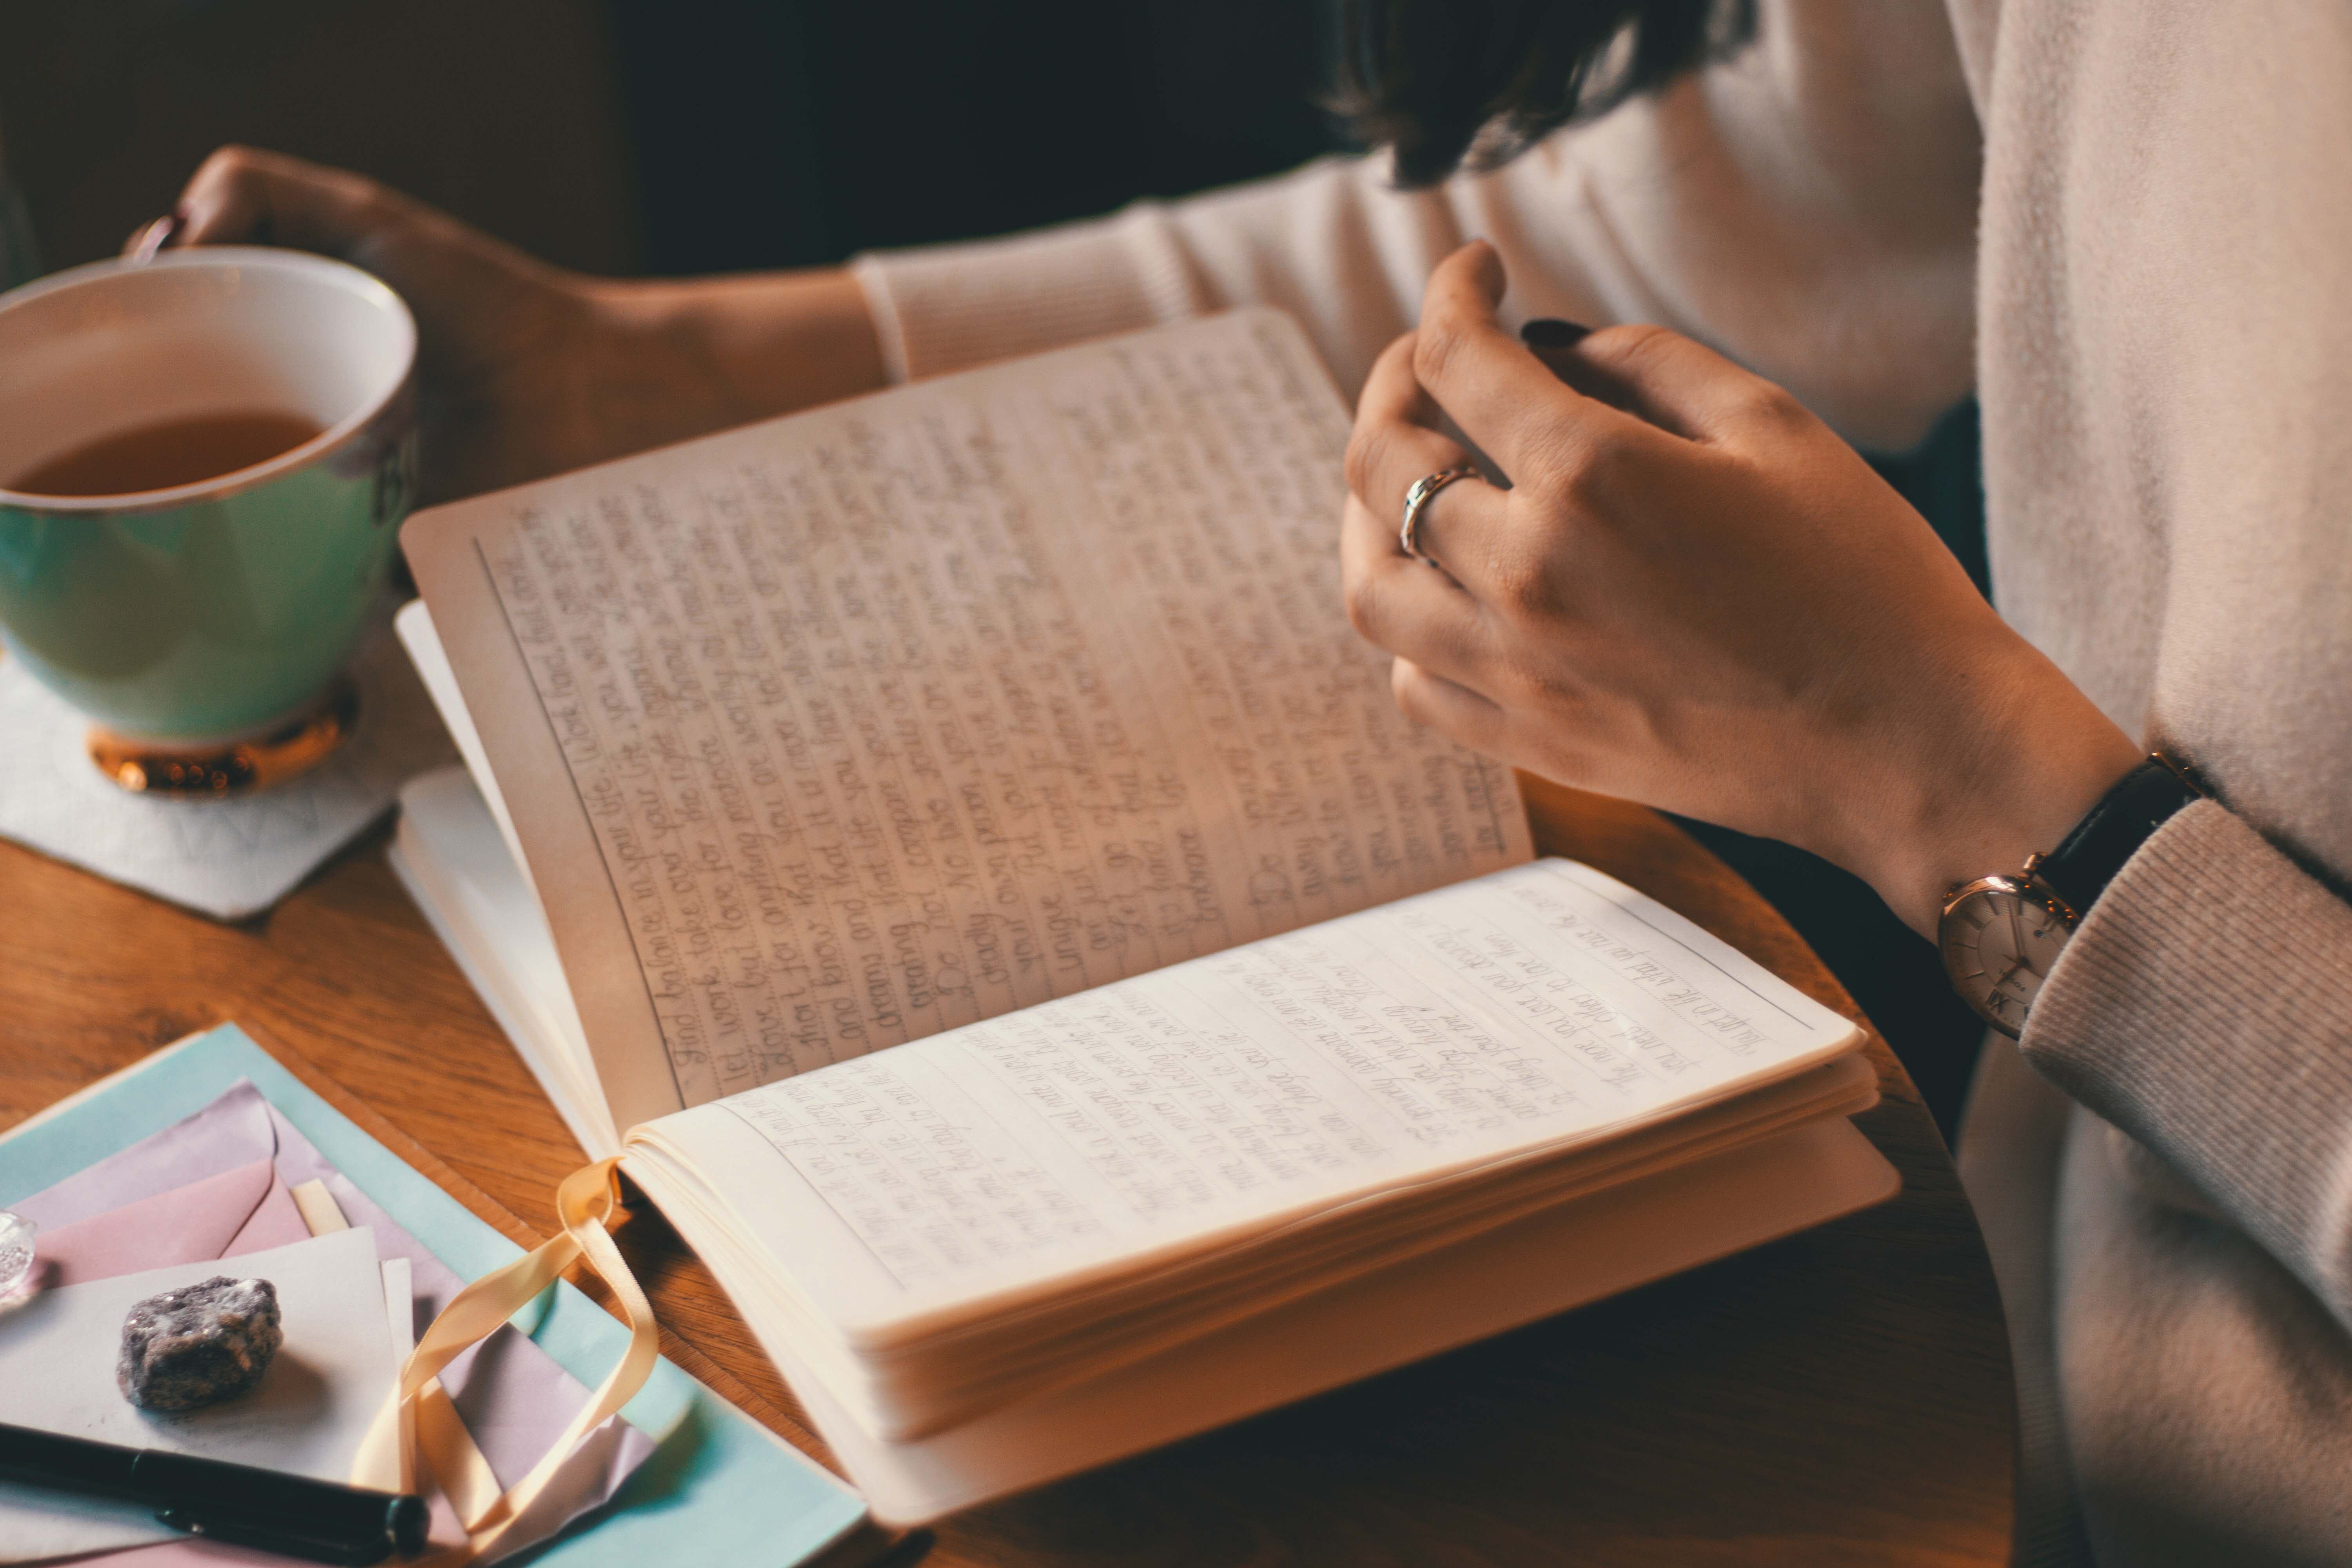 Menulis jurnal bisa jadi salah satu bentuk self care. | Foto: Alina Vilchenko/Pexels